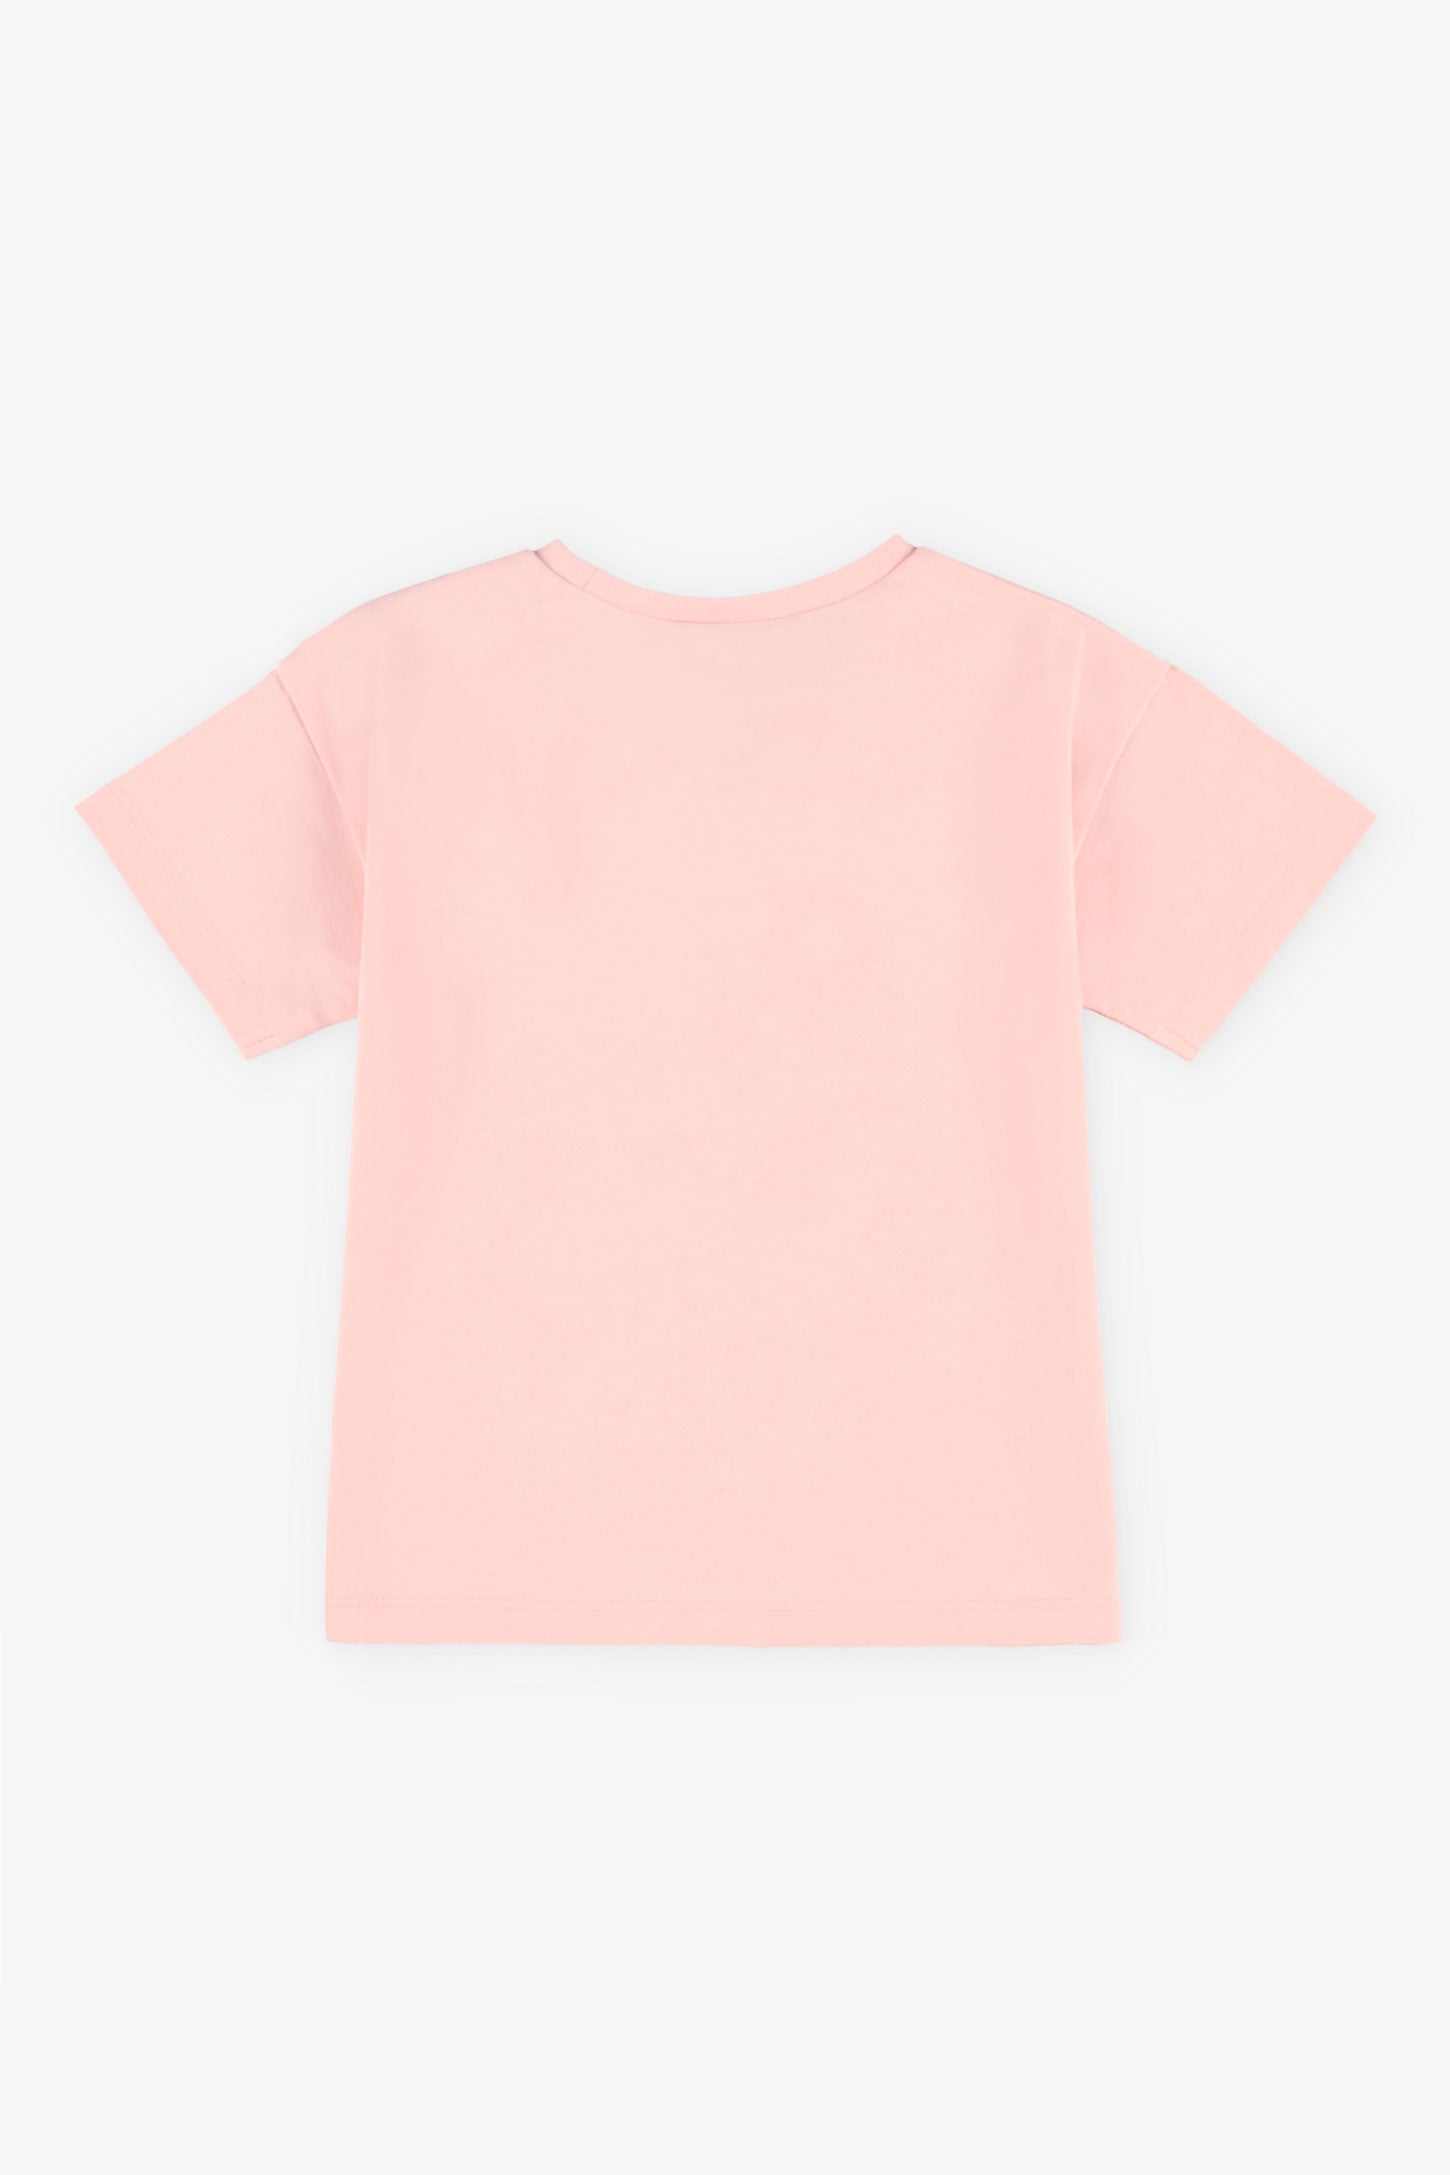 T-shirt coton avec appliqué crochet, 2T-3T - Bébé fille && ROSE